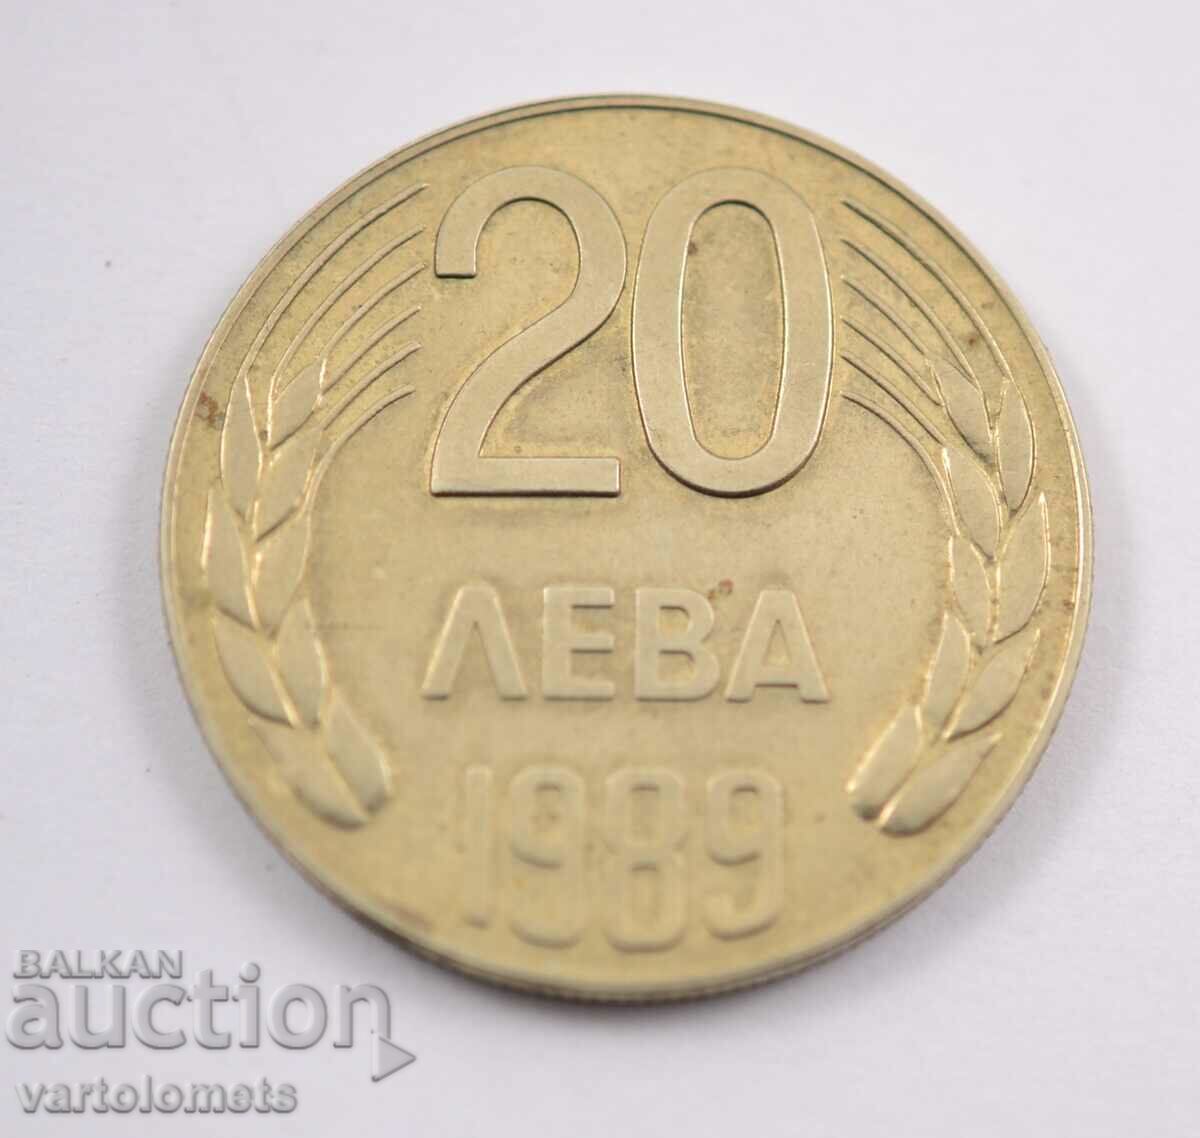 20 лева 1989 - България